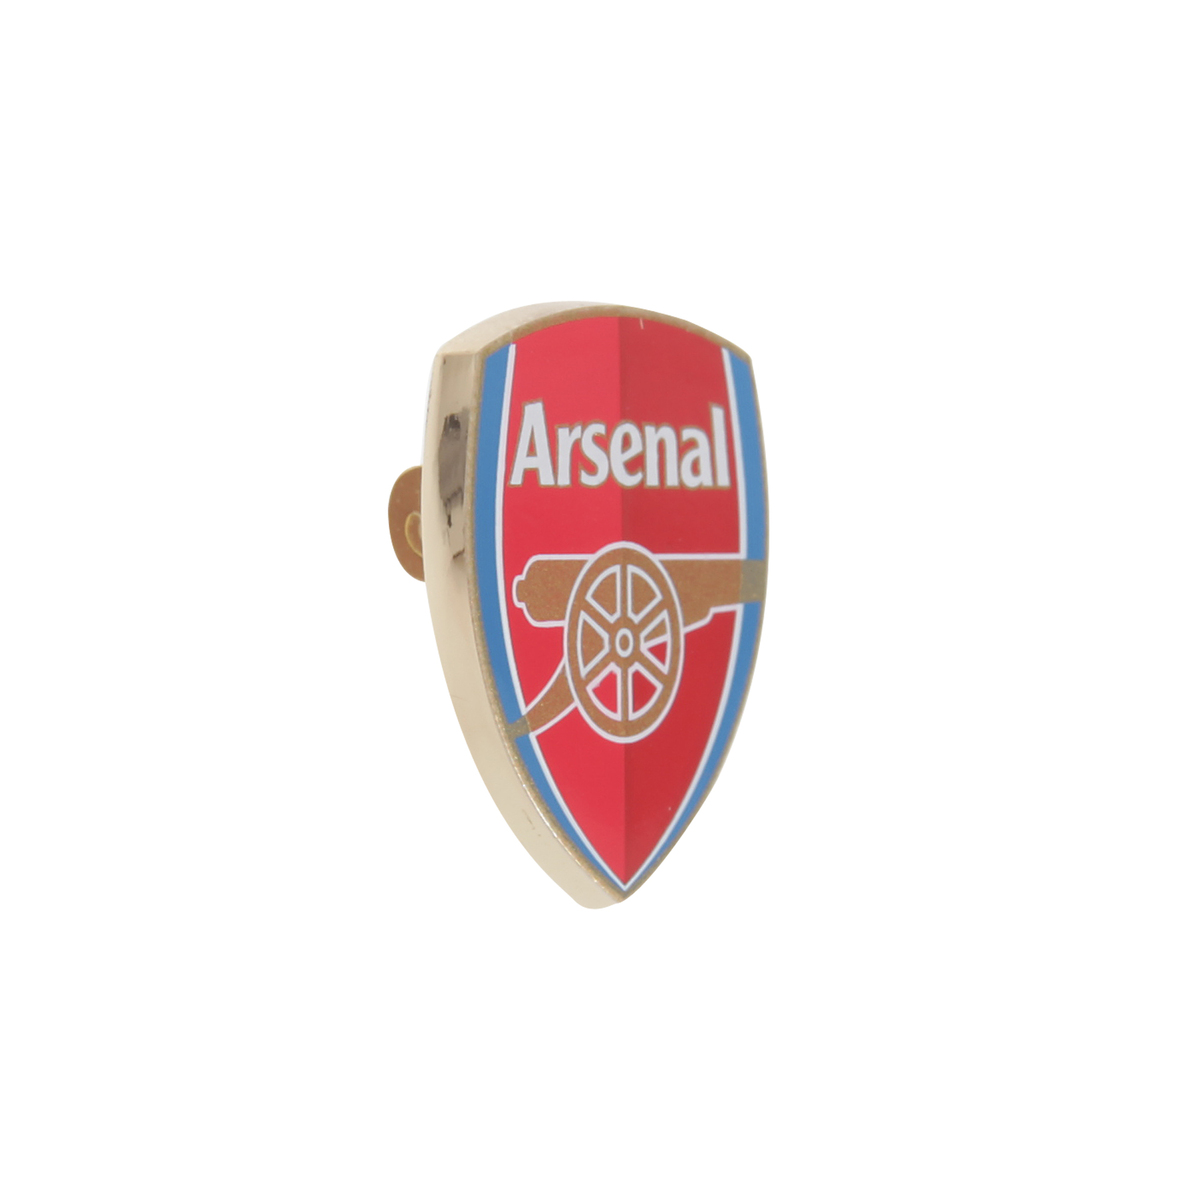 楽天市場 アーセナル フットボールクラブ Arsenal Fc オフィシャル商品 ロゴ ピンバッジ 楽天海外直送 Pertemba Japan